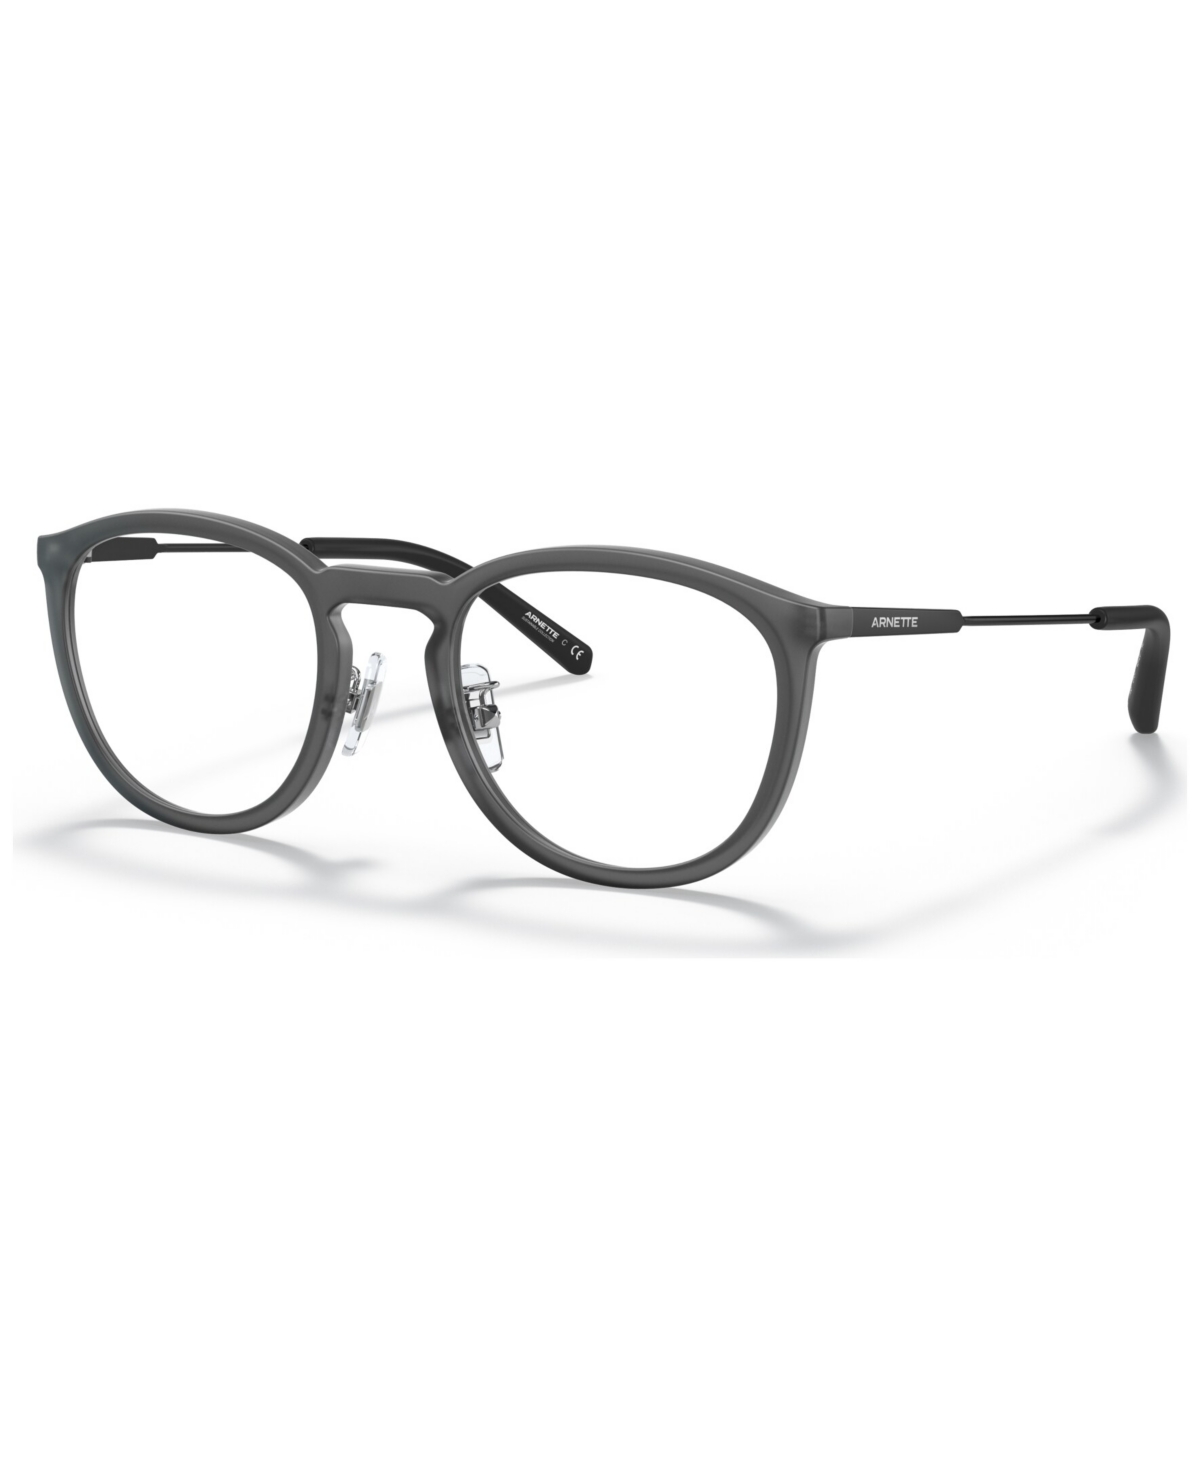 Unisex Phantos Eyeglasses, AN719349-o - Transparent Gray